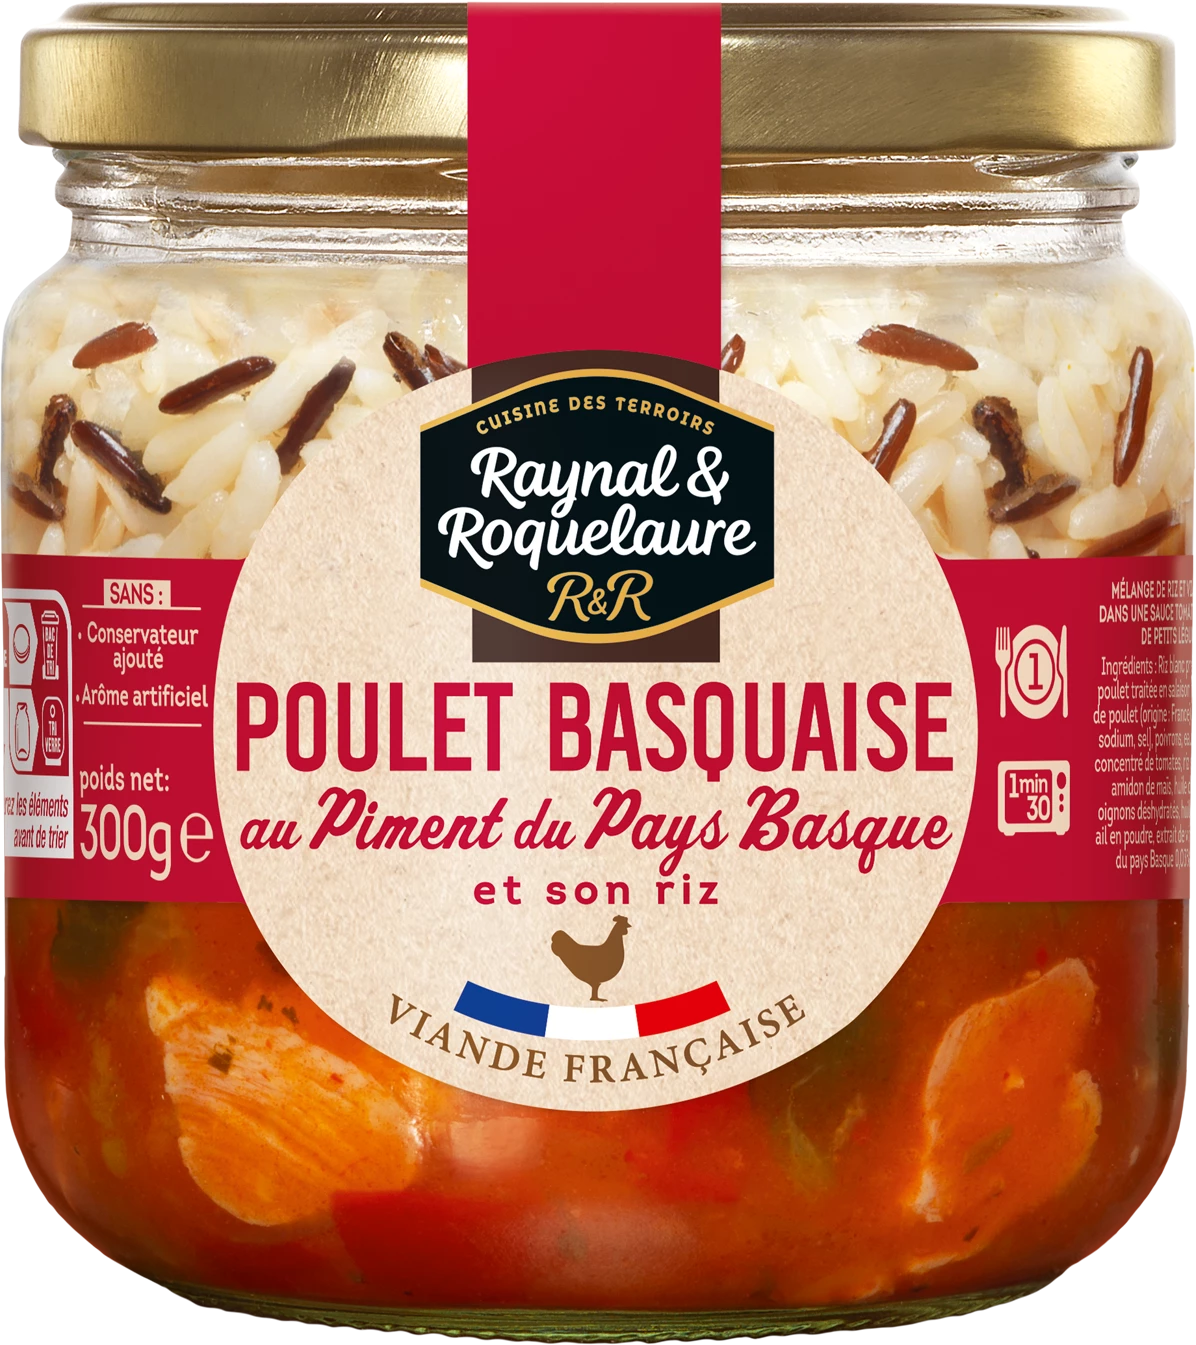 Plat Cuisiné Poulet Basquaise au Piment du Pays Basque, 300g  -  RAYNAL ET ROQUELAURE